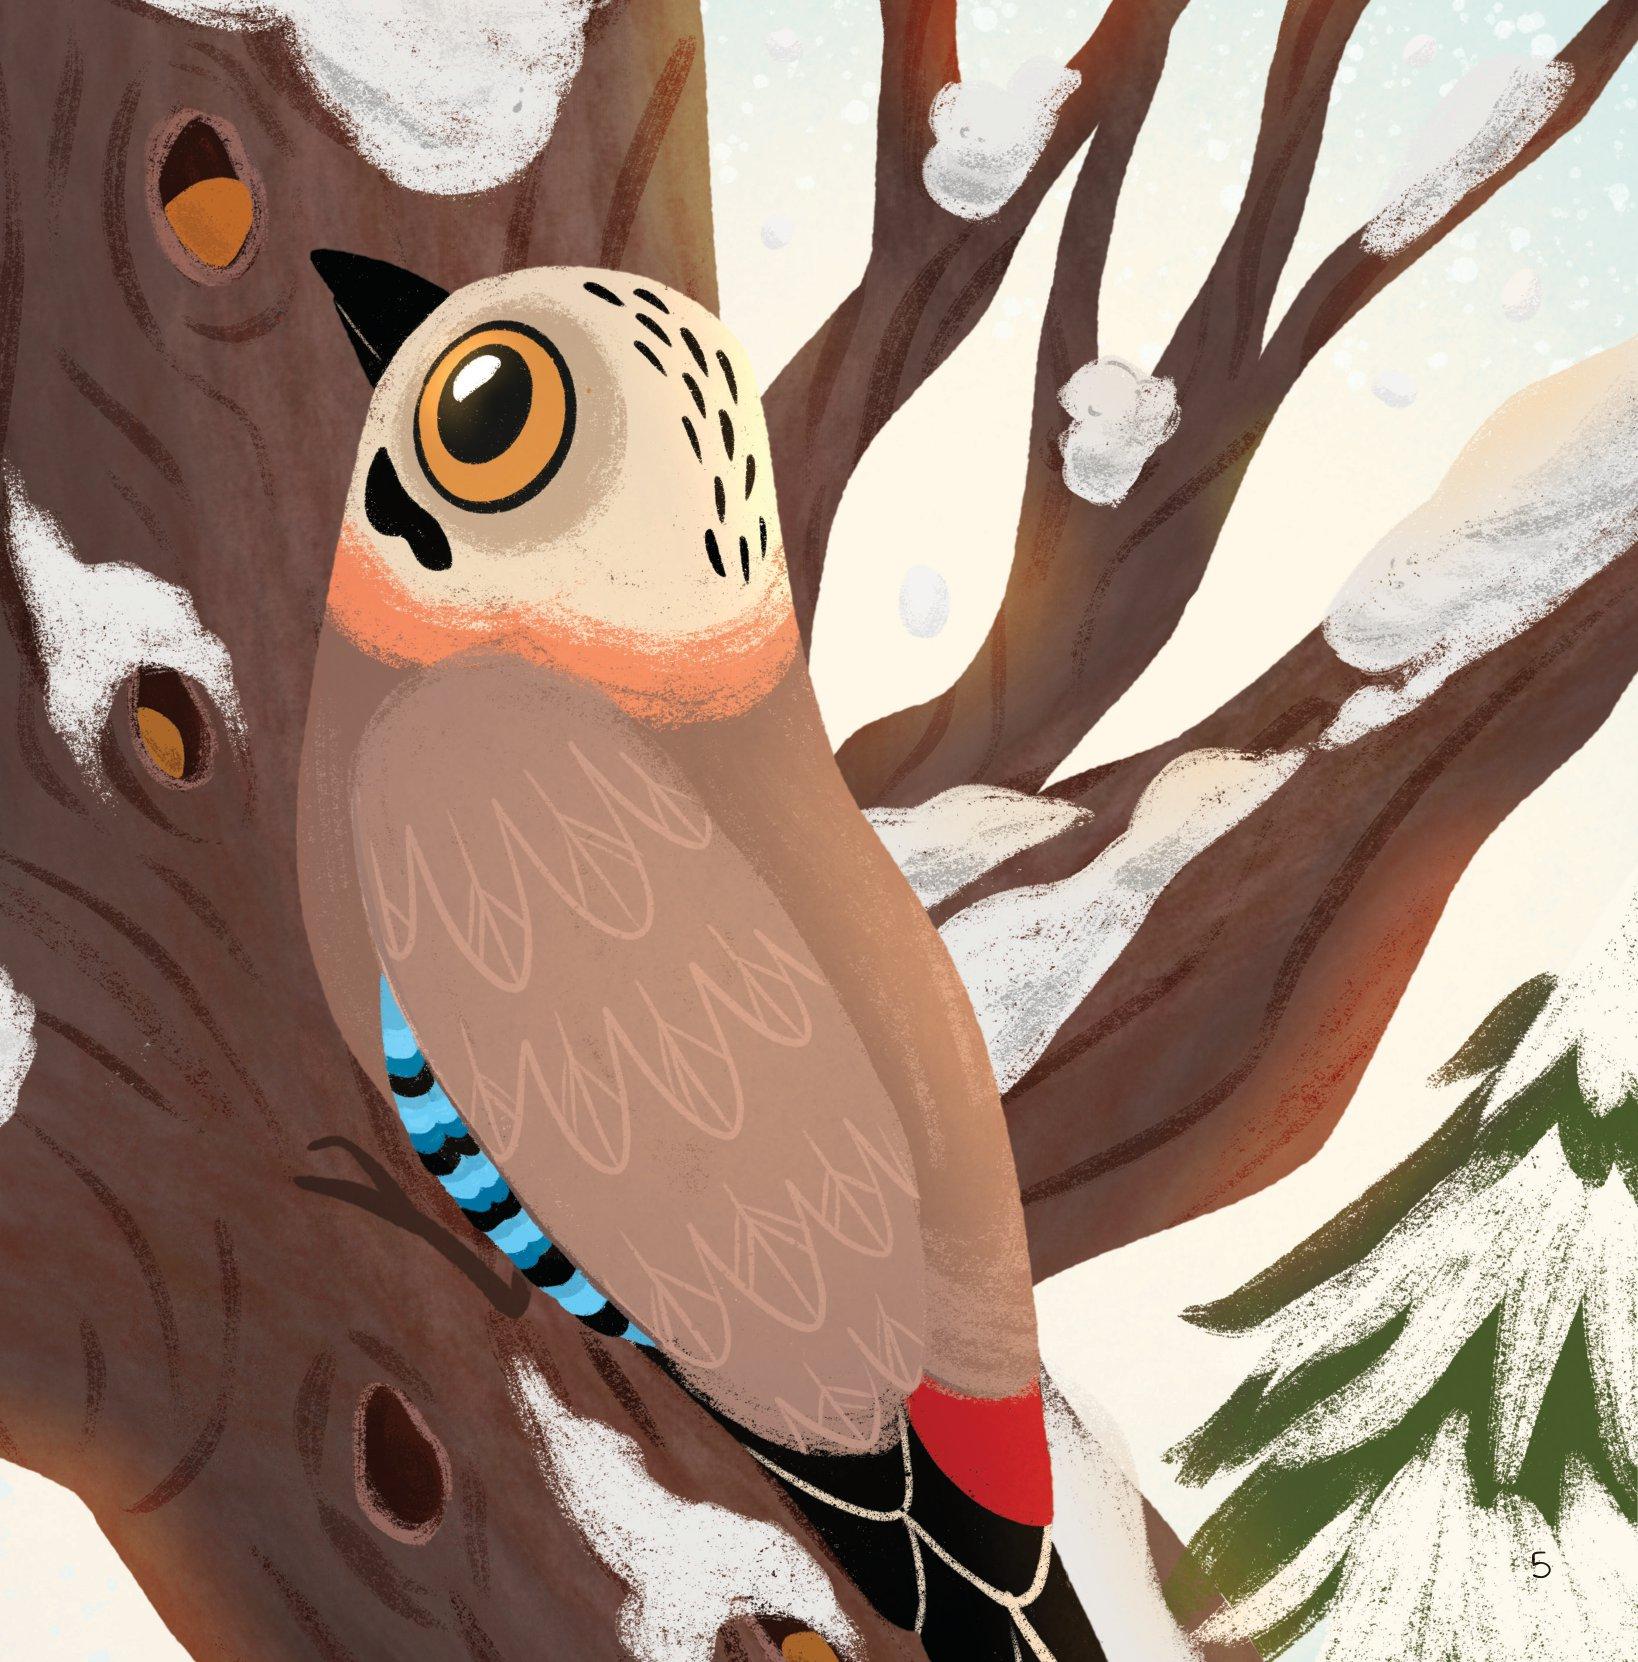 Hình ảnh Những Bài Học Nhỏ Từ Rừng Xanh - Chú Chim Ích Kỷ Học Cách Chia Sẻ